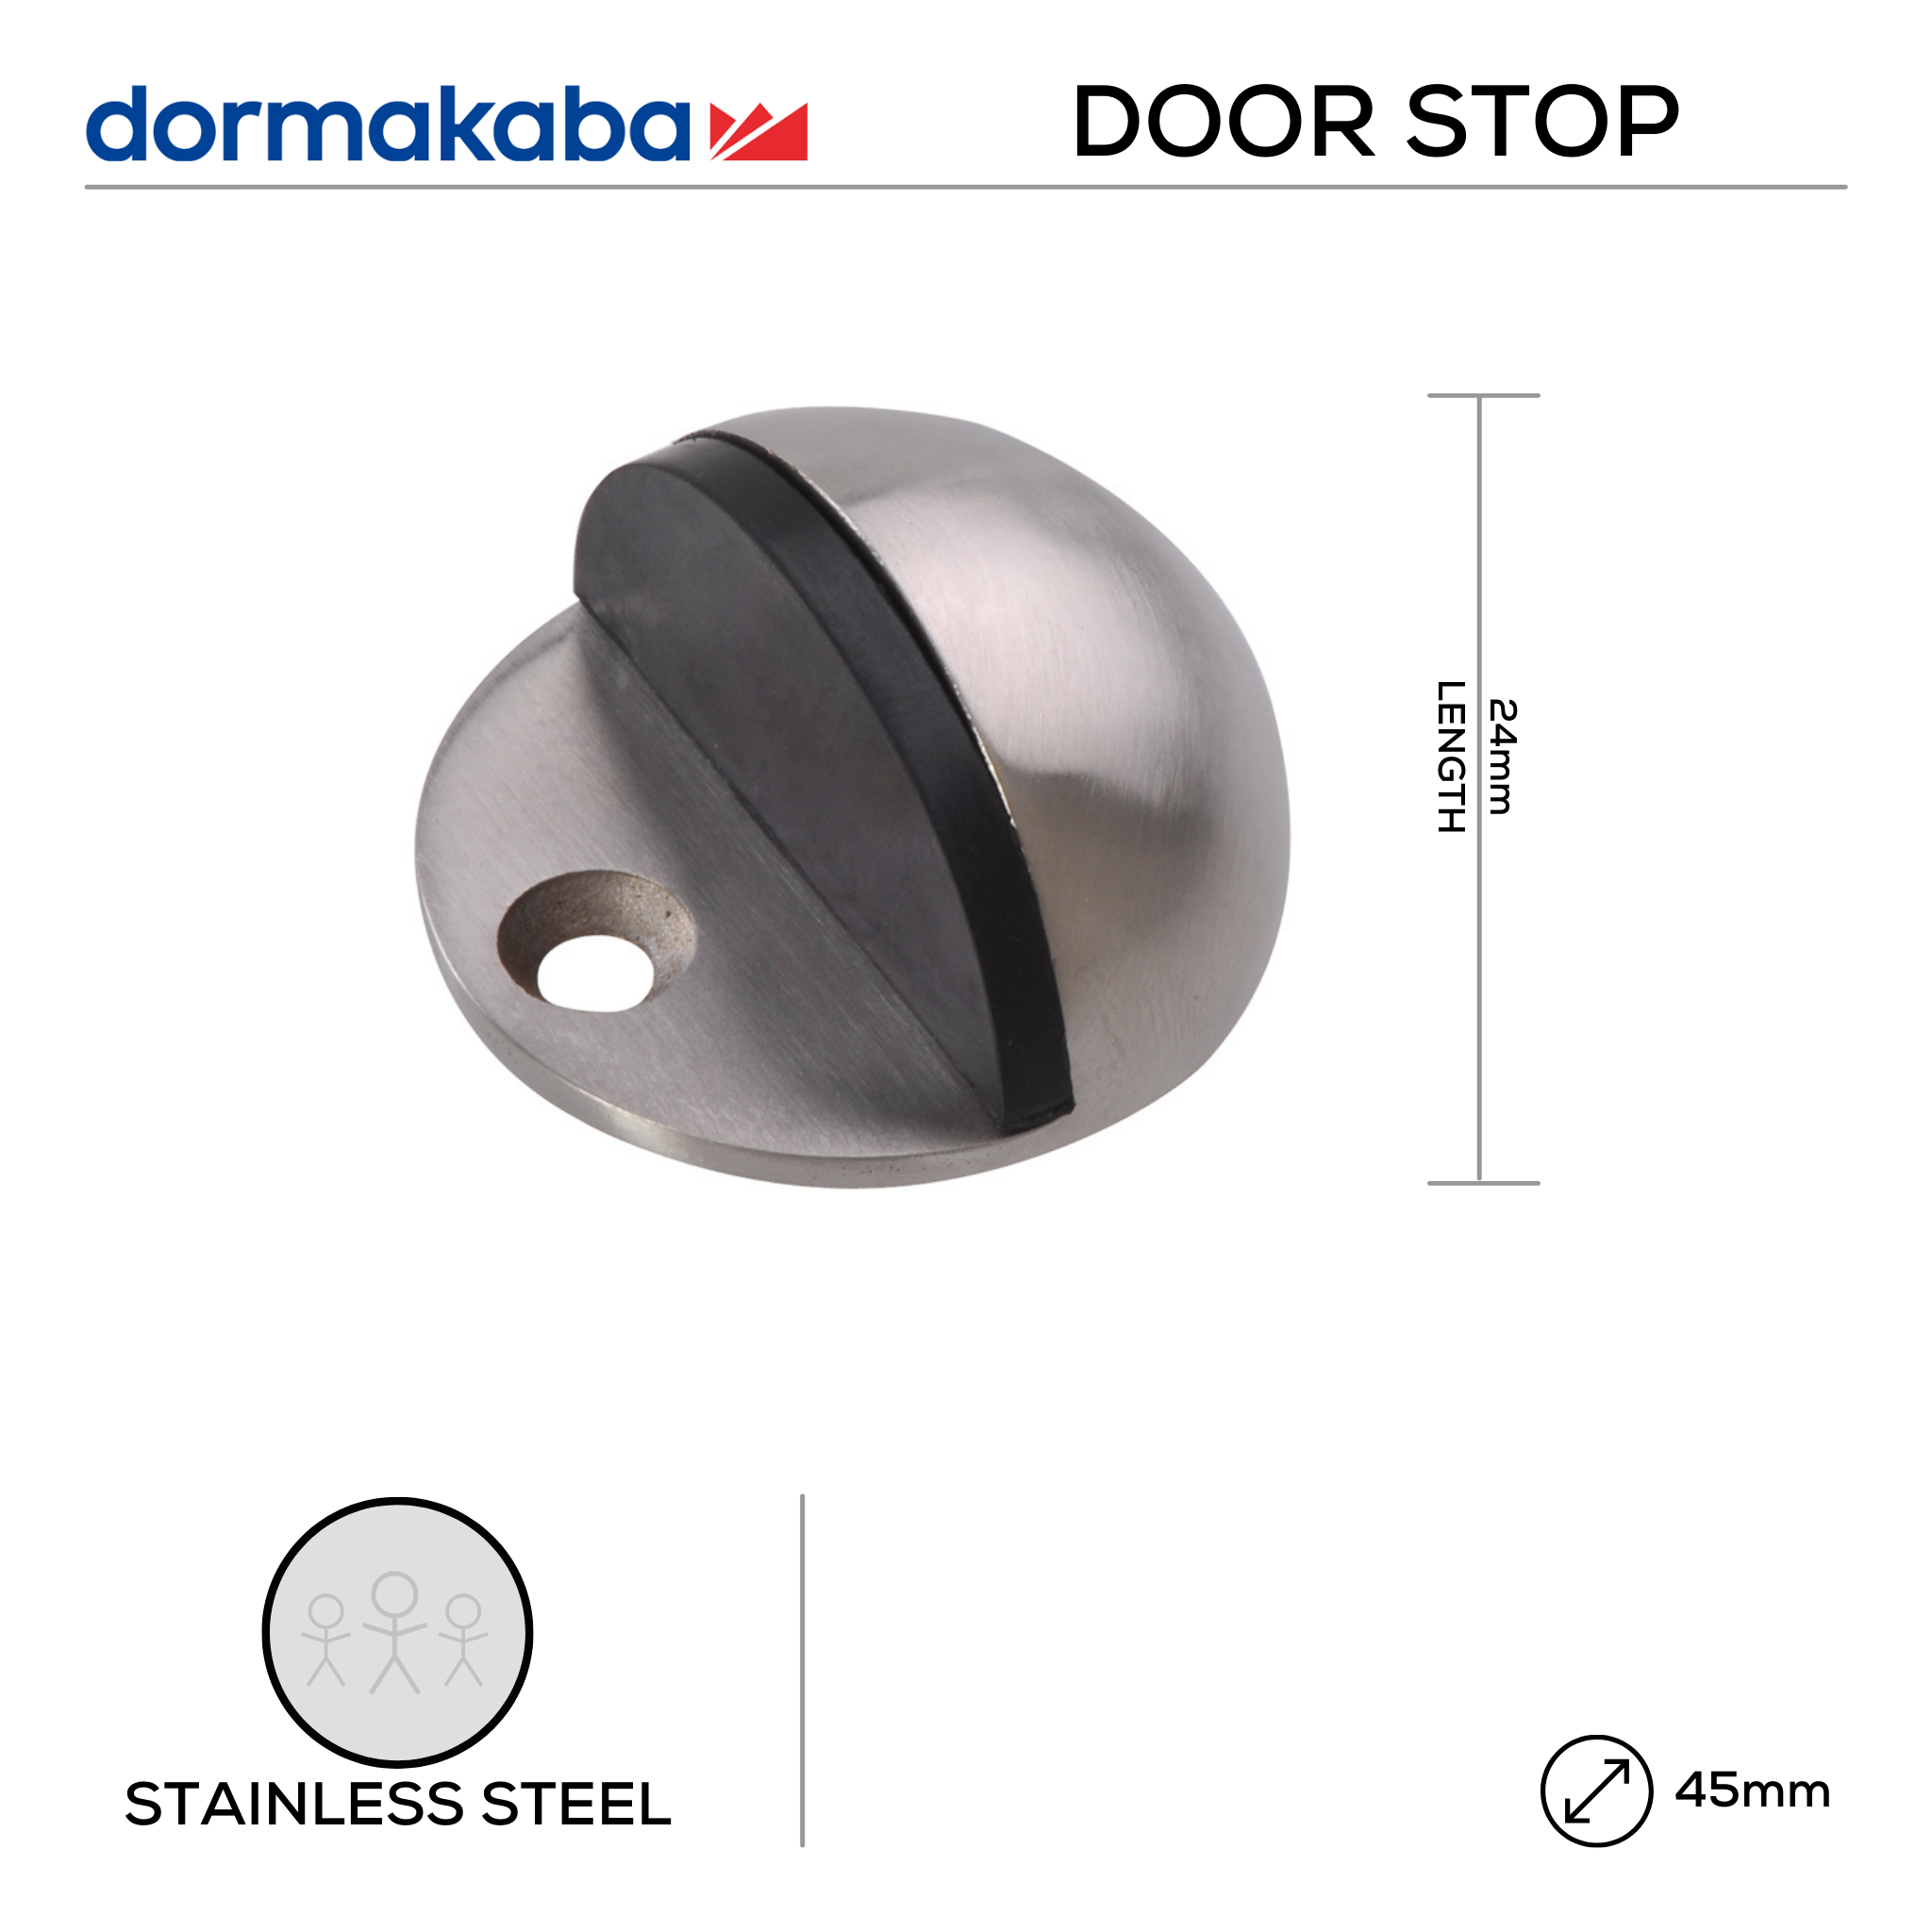 DDS-SS-017, Door Stop, Floor Mounted, Hooded, 24mm (l) x 45mm (Ø), Stainless Steel, DORMAKABA